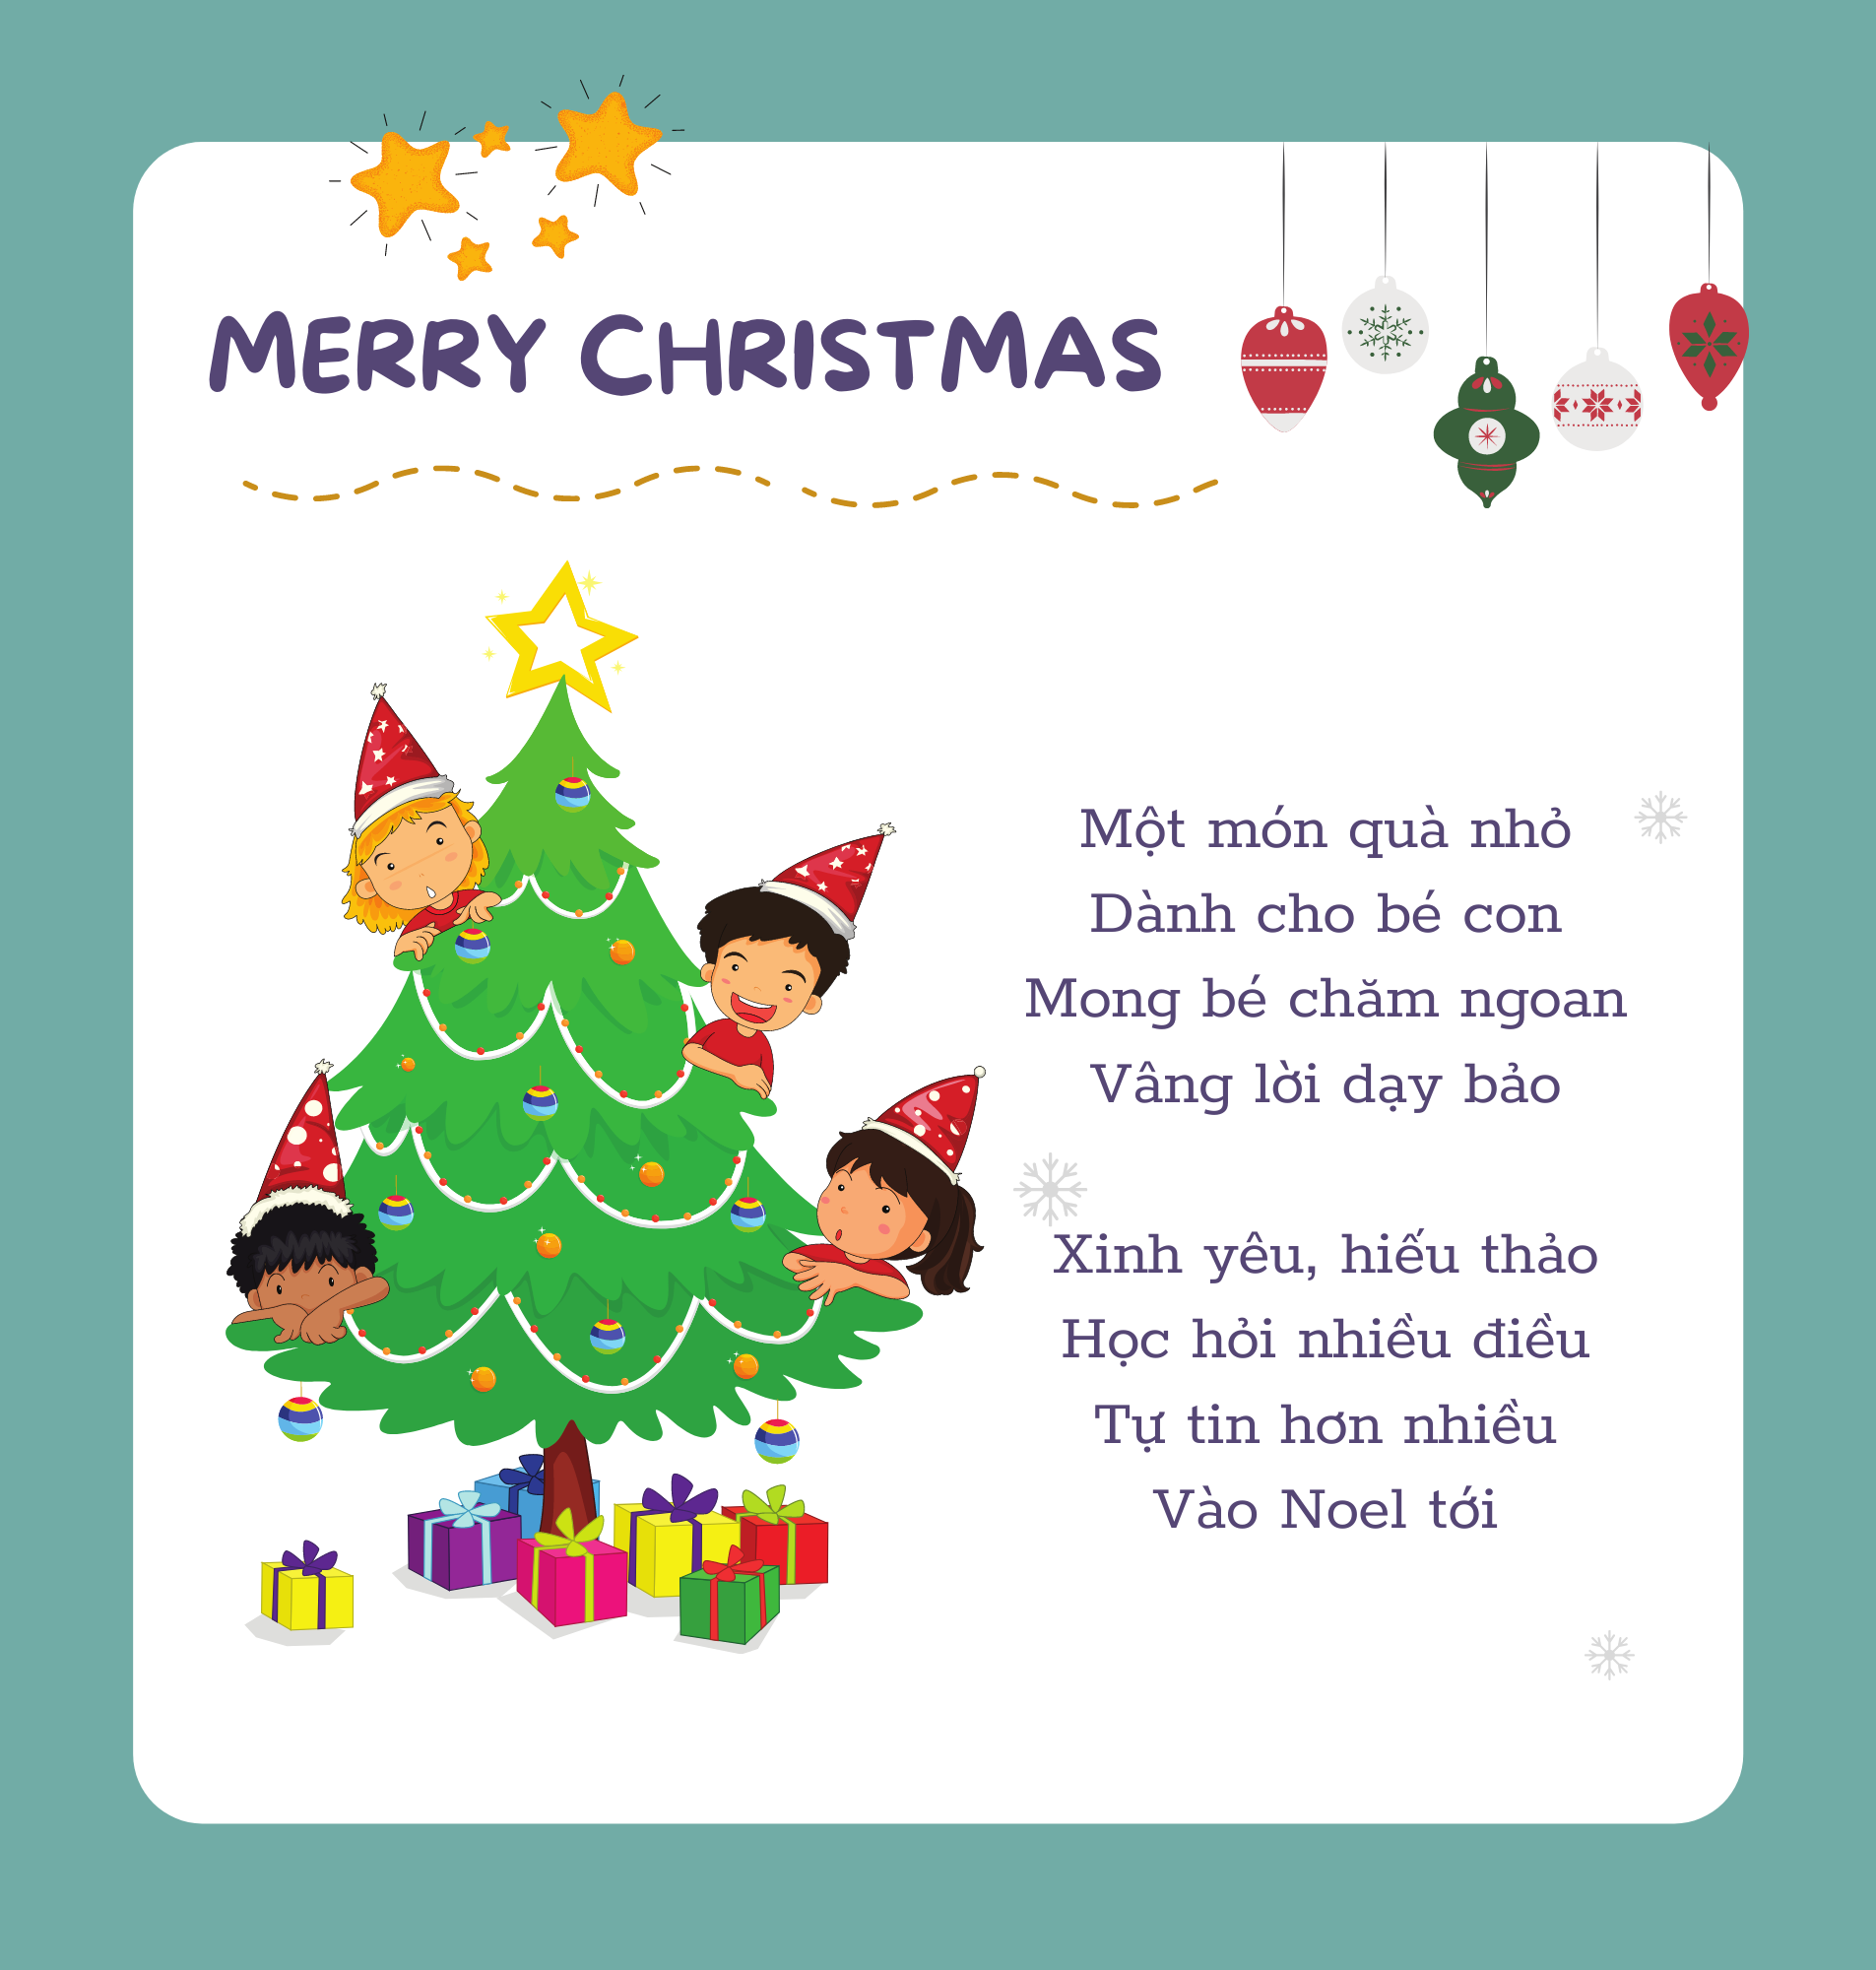 Top 5 bài thơ Giáng sinh cho thiếu nhi vui nhộn và mới nhất năm 2021 - Ảnh 2.